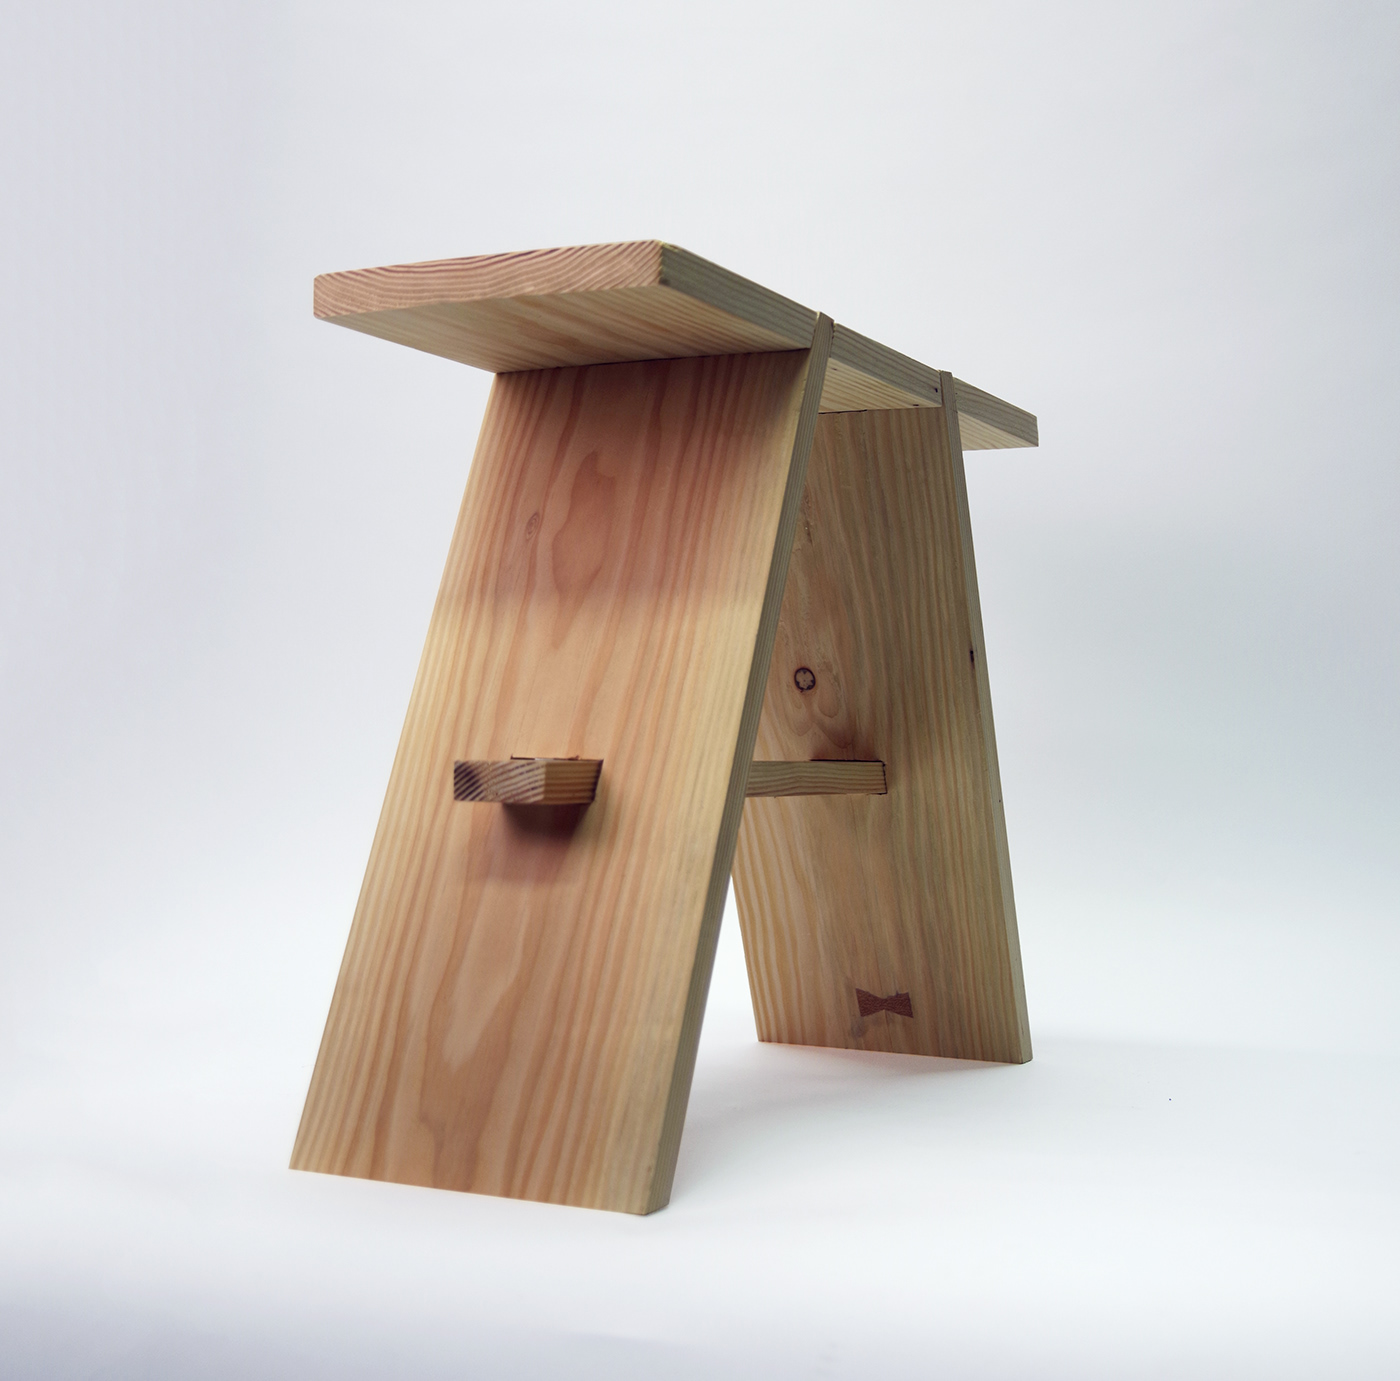 Sustainable furniture stool wood minimalist New Nordic